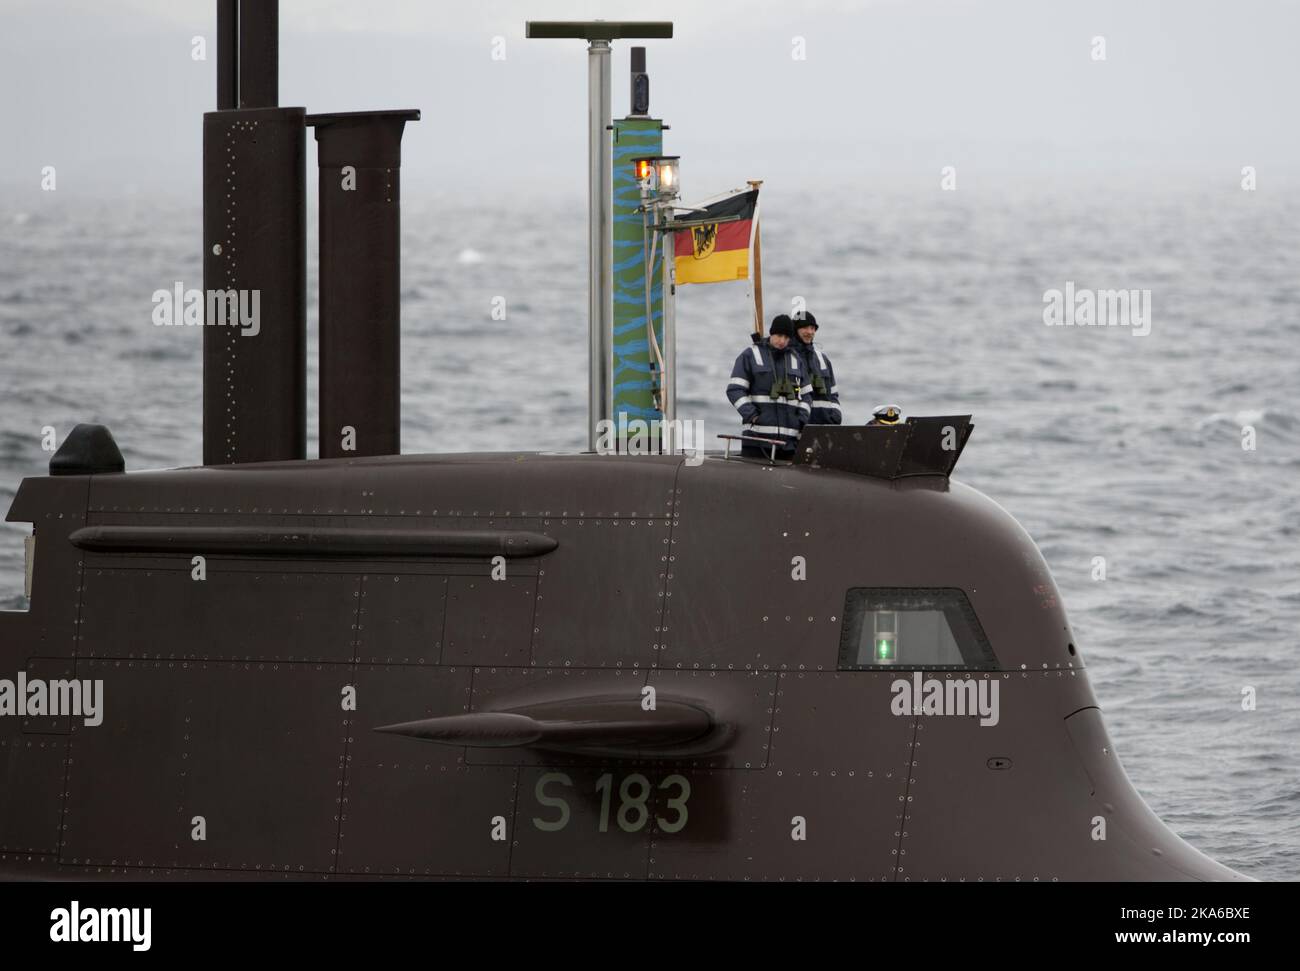 Bergen, Norvège 20150504. L'exercice sous-marin de l'OTAN, Dynamic Mongoose 2015, s'est tenu ces jours-ci dans les eaux au large de Bergen. Voici le sous-marin allemand U33. Photo: Marit HomMedal / NTB scanpix Banque D'Images